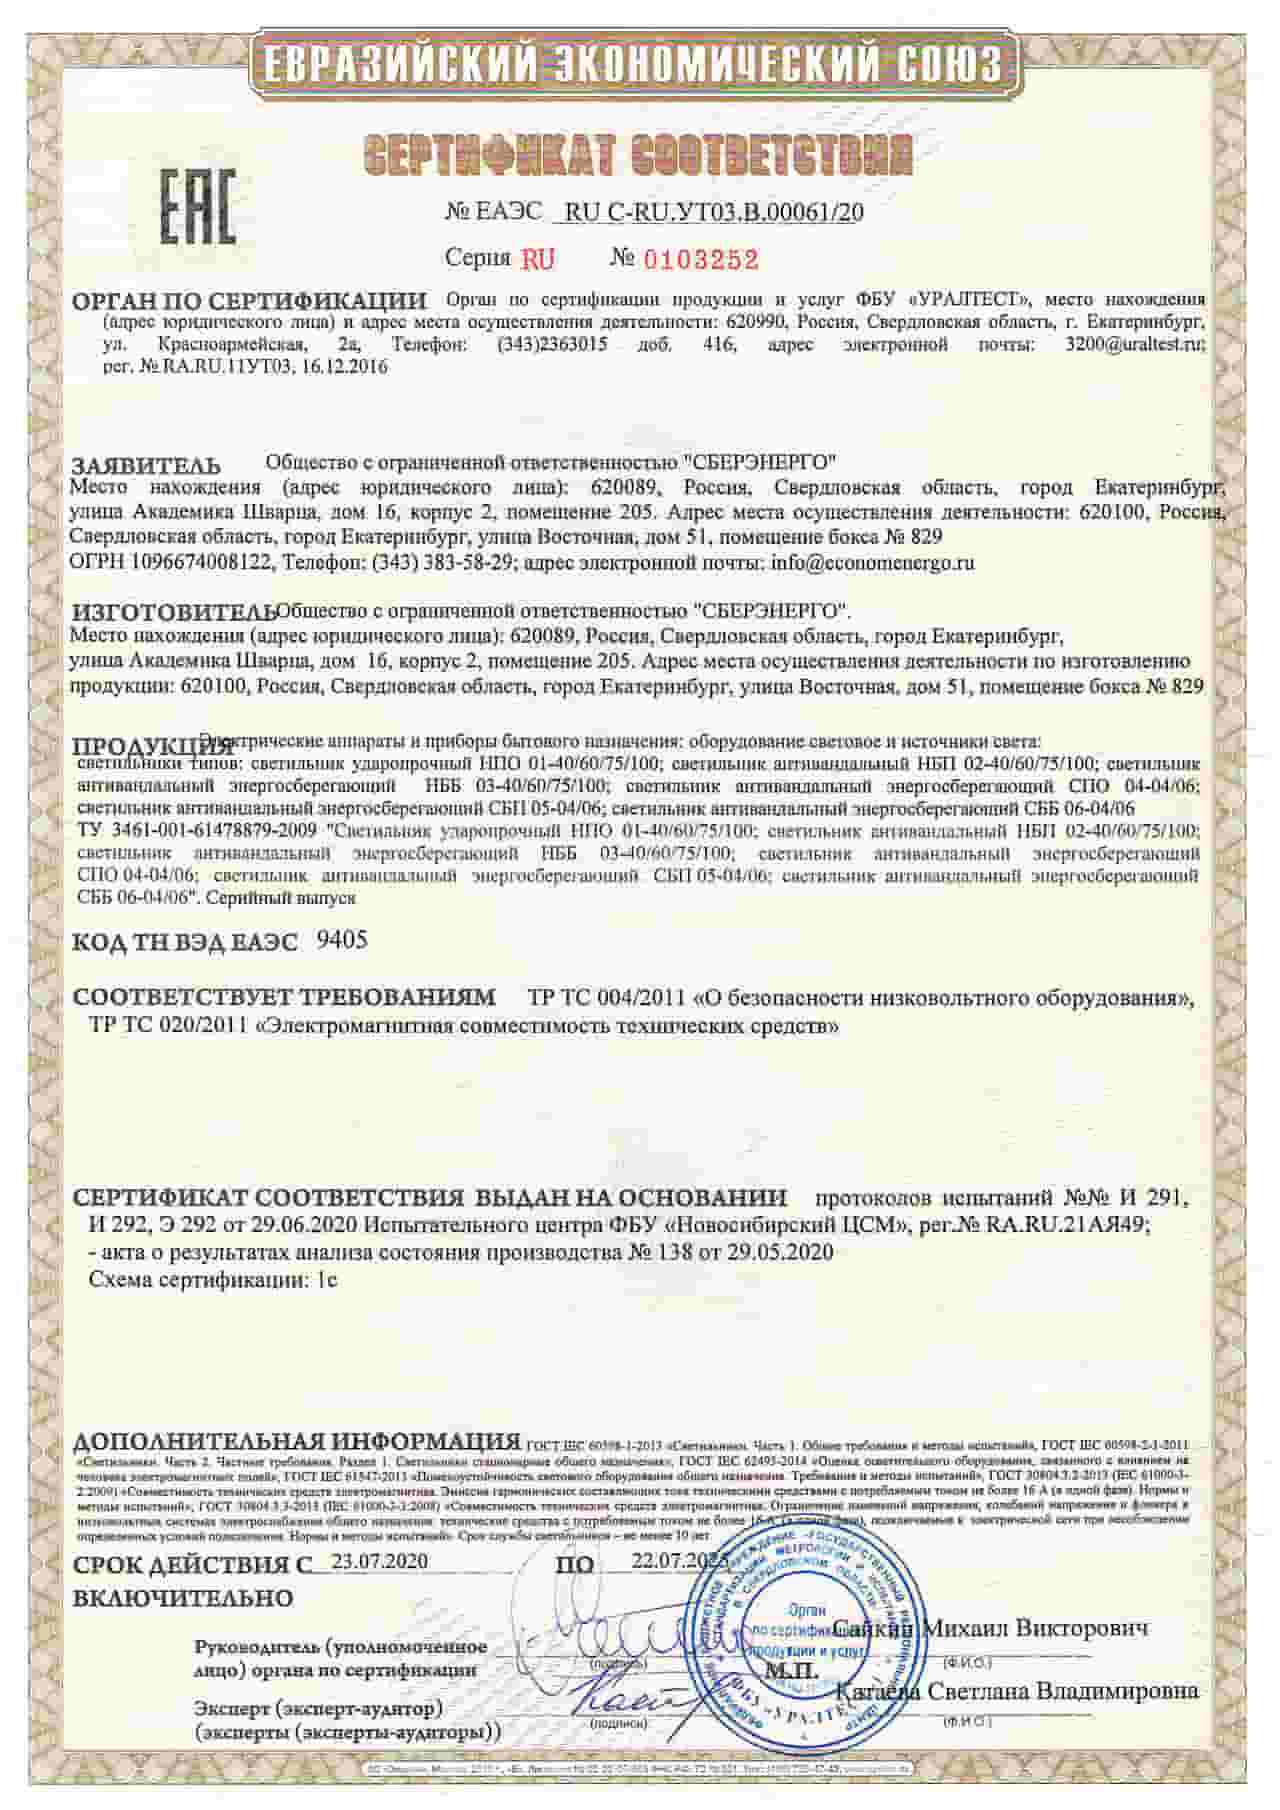 Сертификат на светильники производителя СБЕРЭНЕРГО